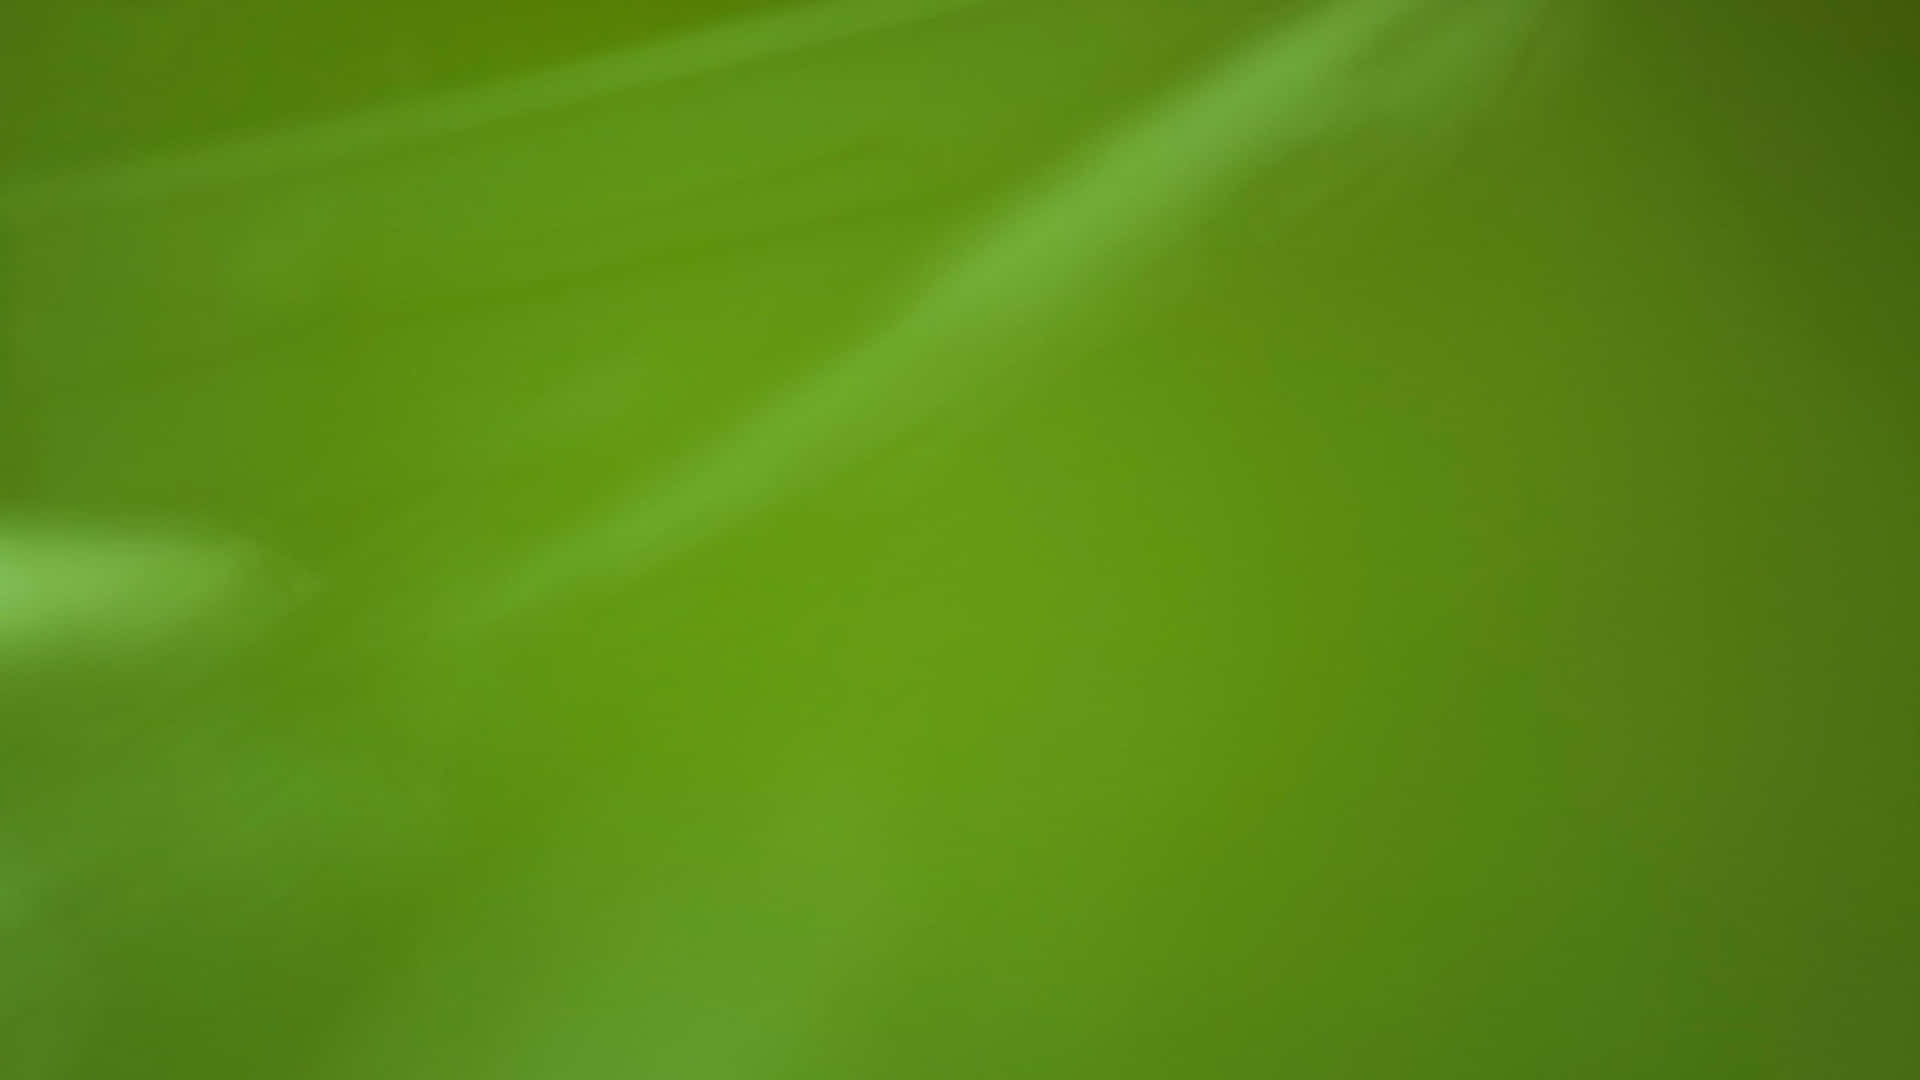 Lebendigessmaragdgrün - Einfarbiger Grüner Hintergrund